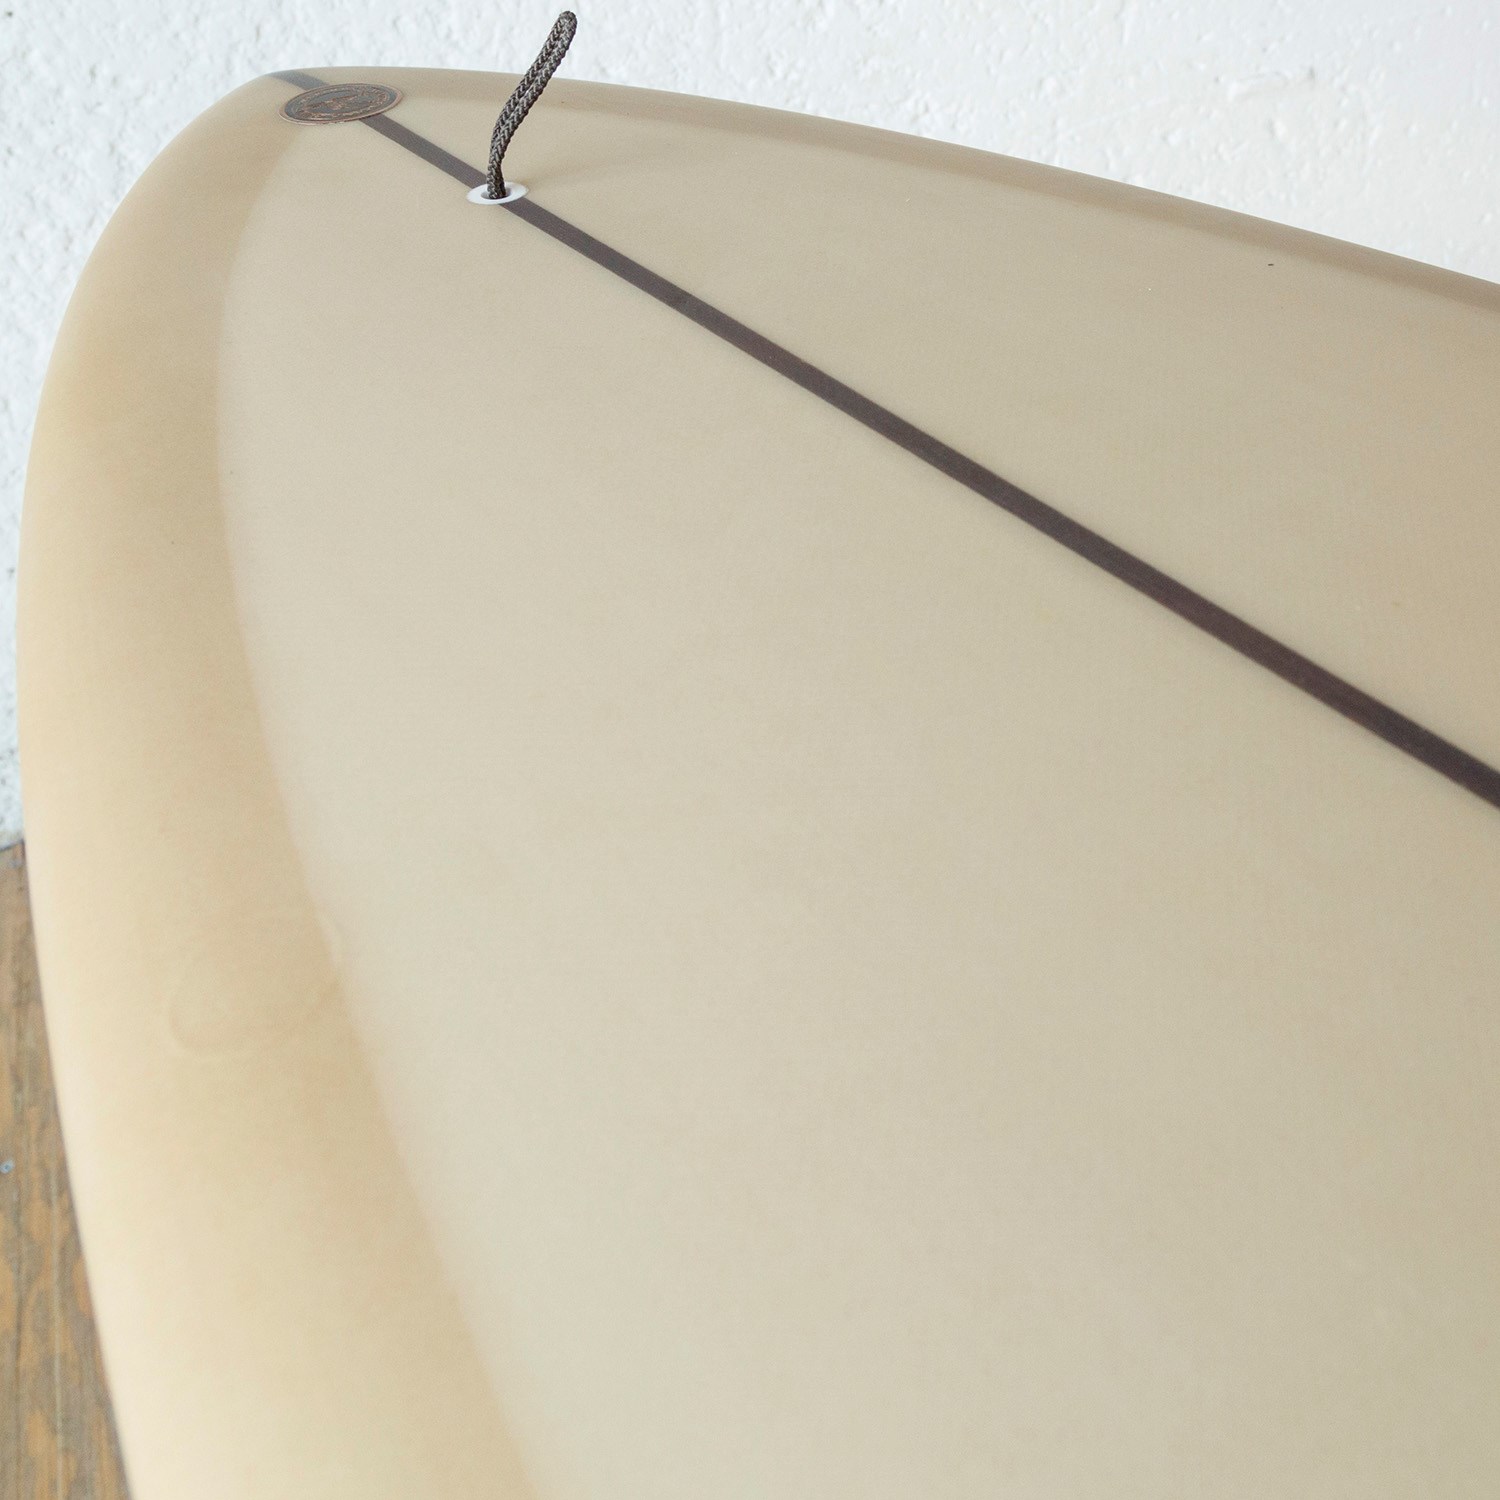 Almond Surfboards 7'6'' Joy Surfboard | evo